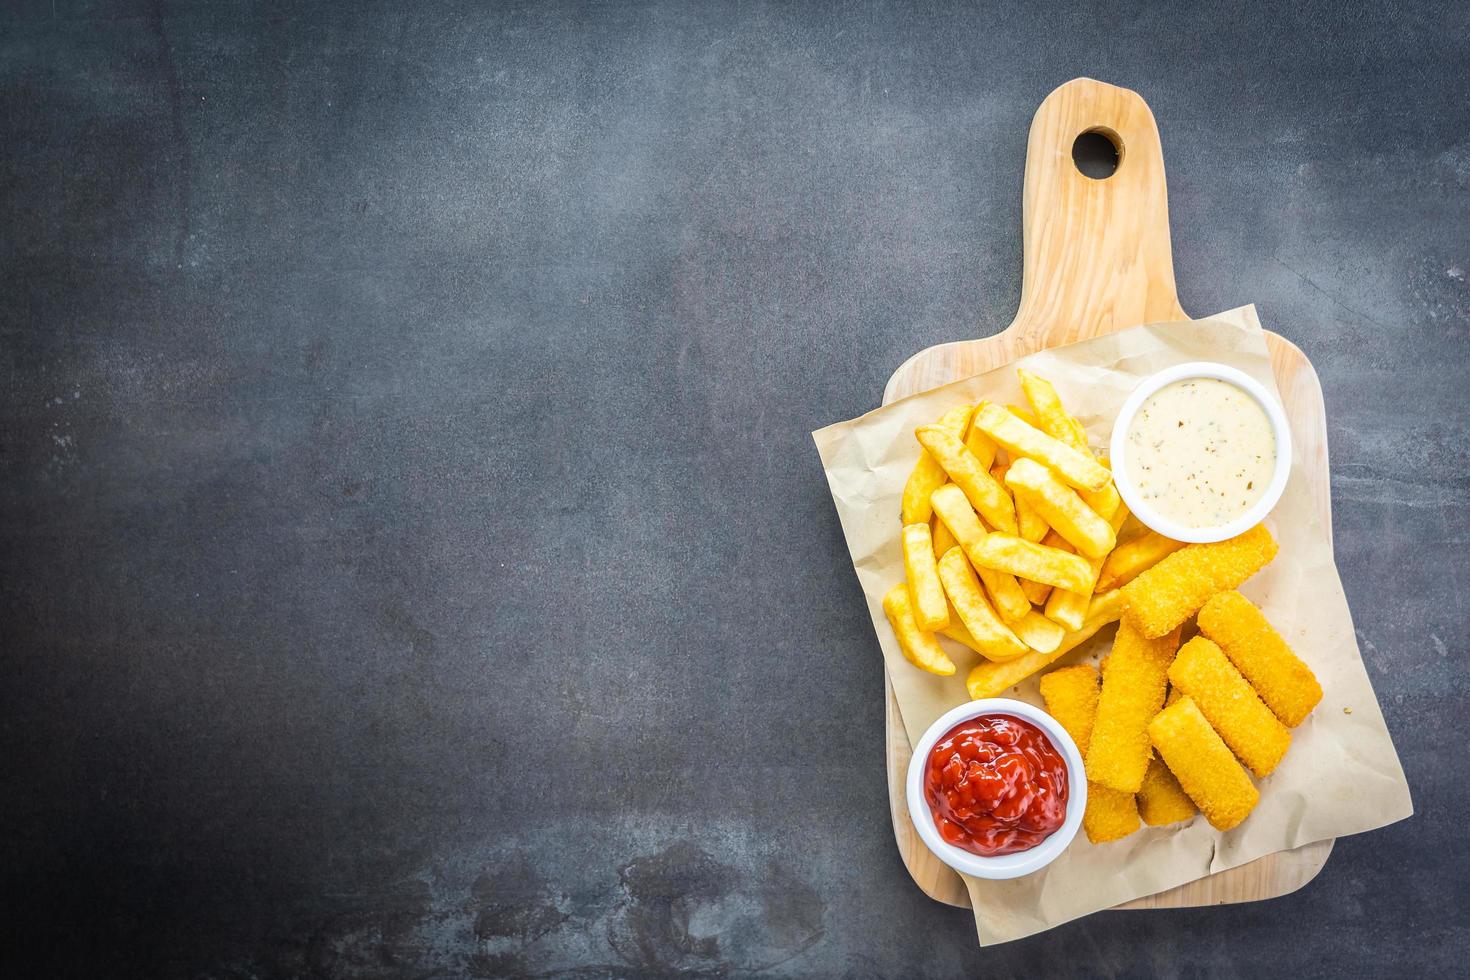 fiskfinger och pommes frites med ketchup och majonnässås foto